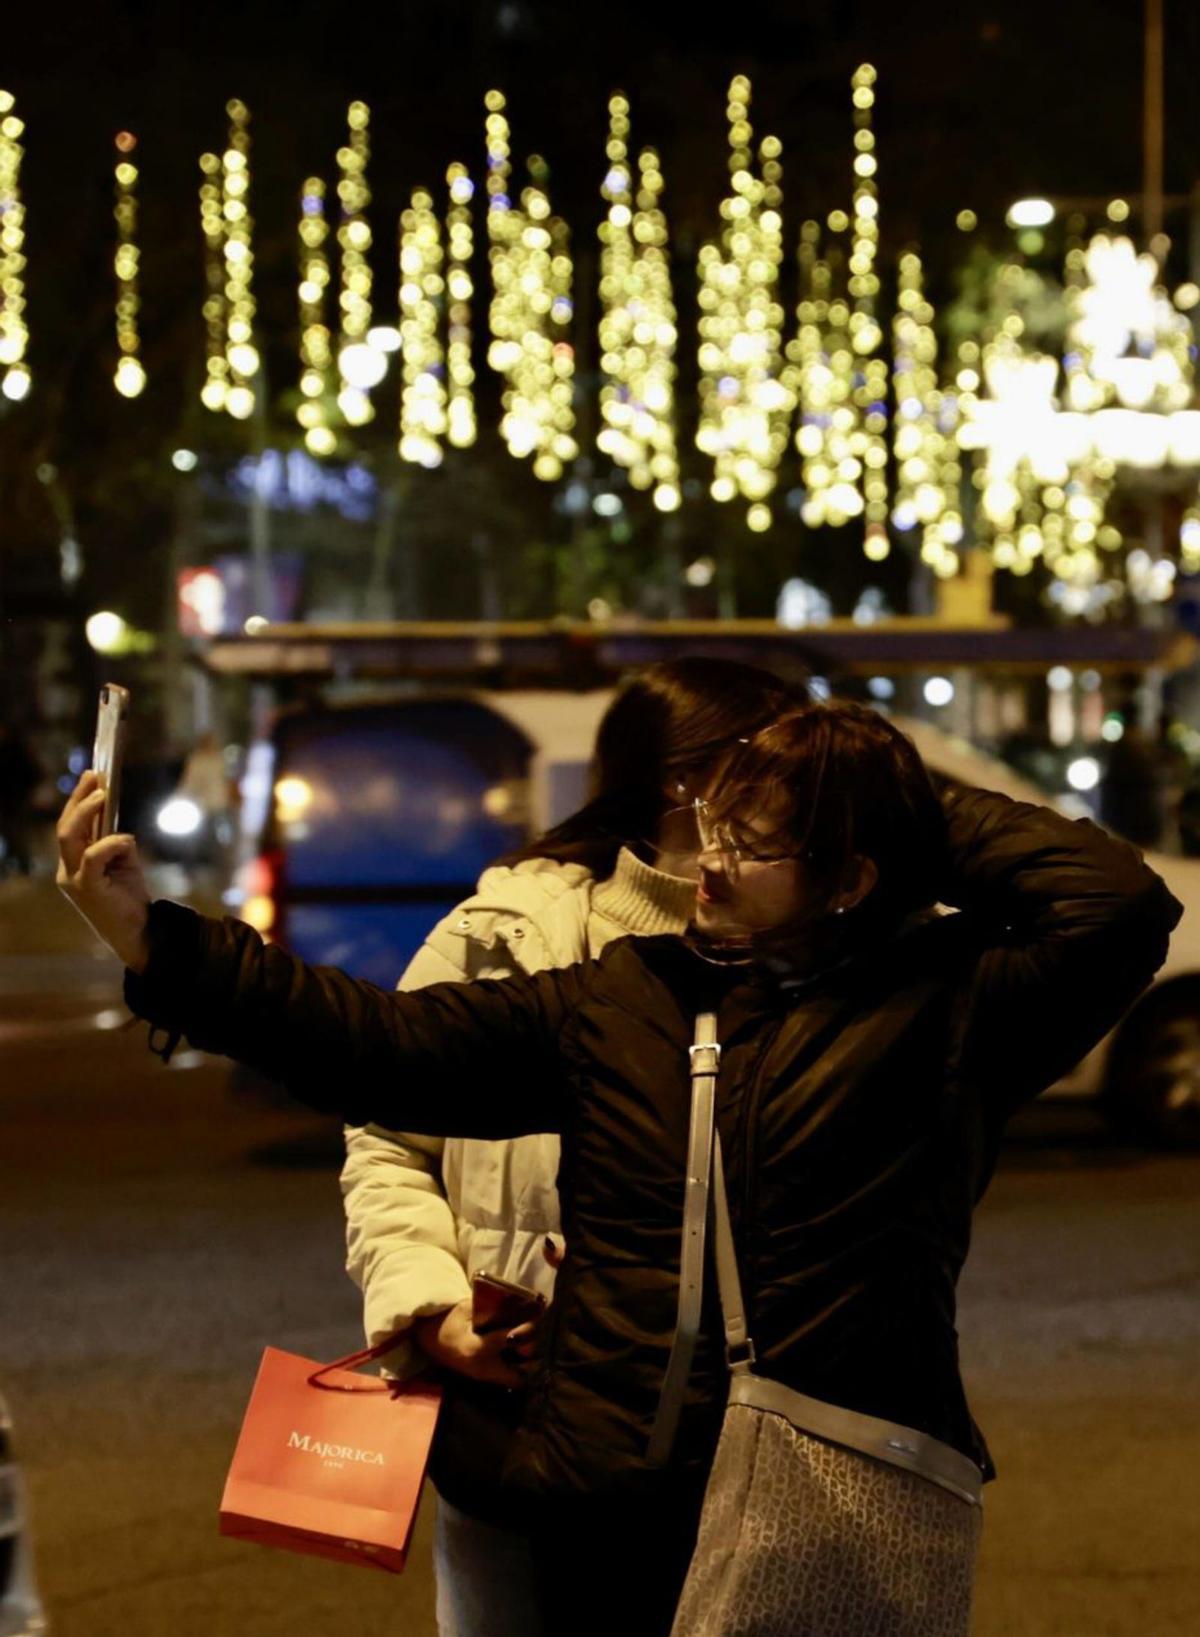 Barcelona demana "prudència" per la febre de ‘selfies’